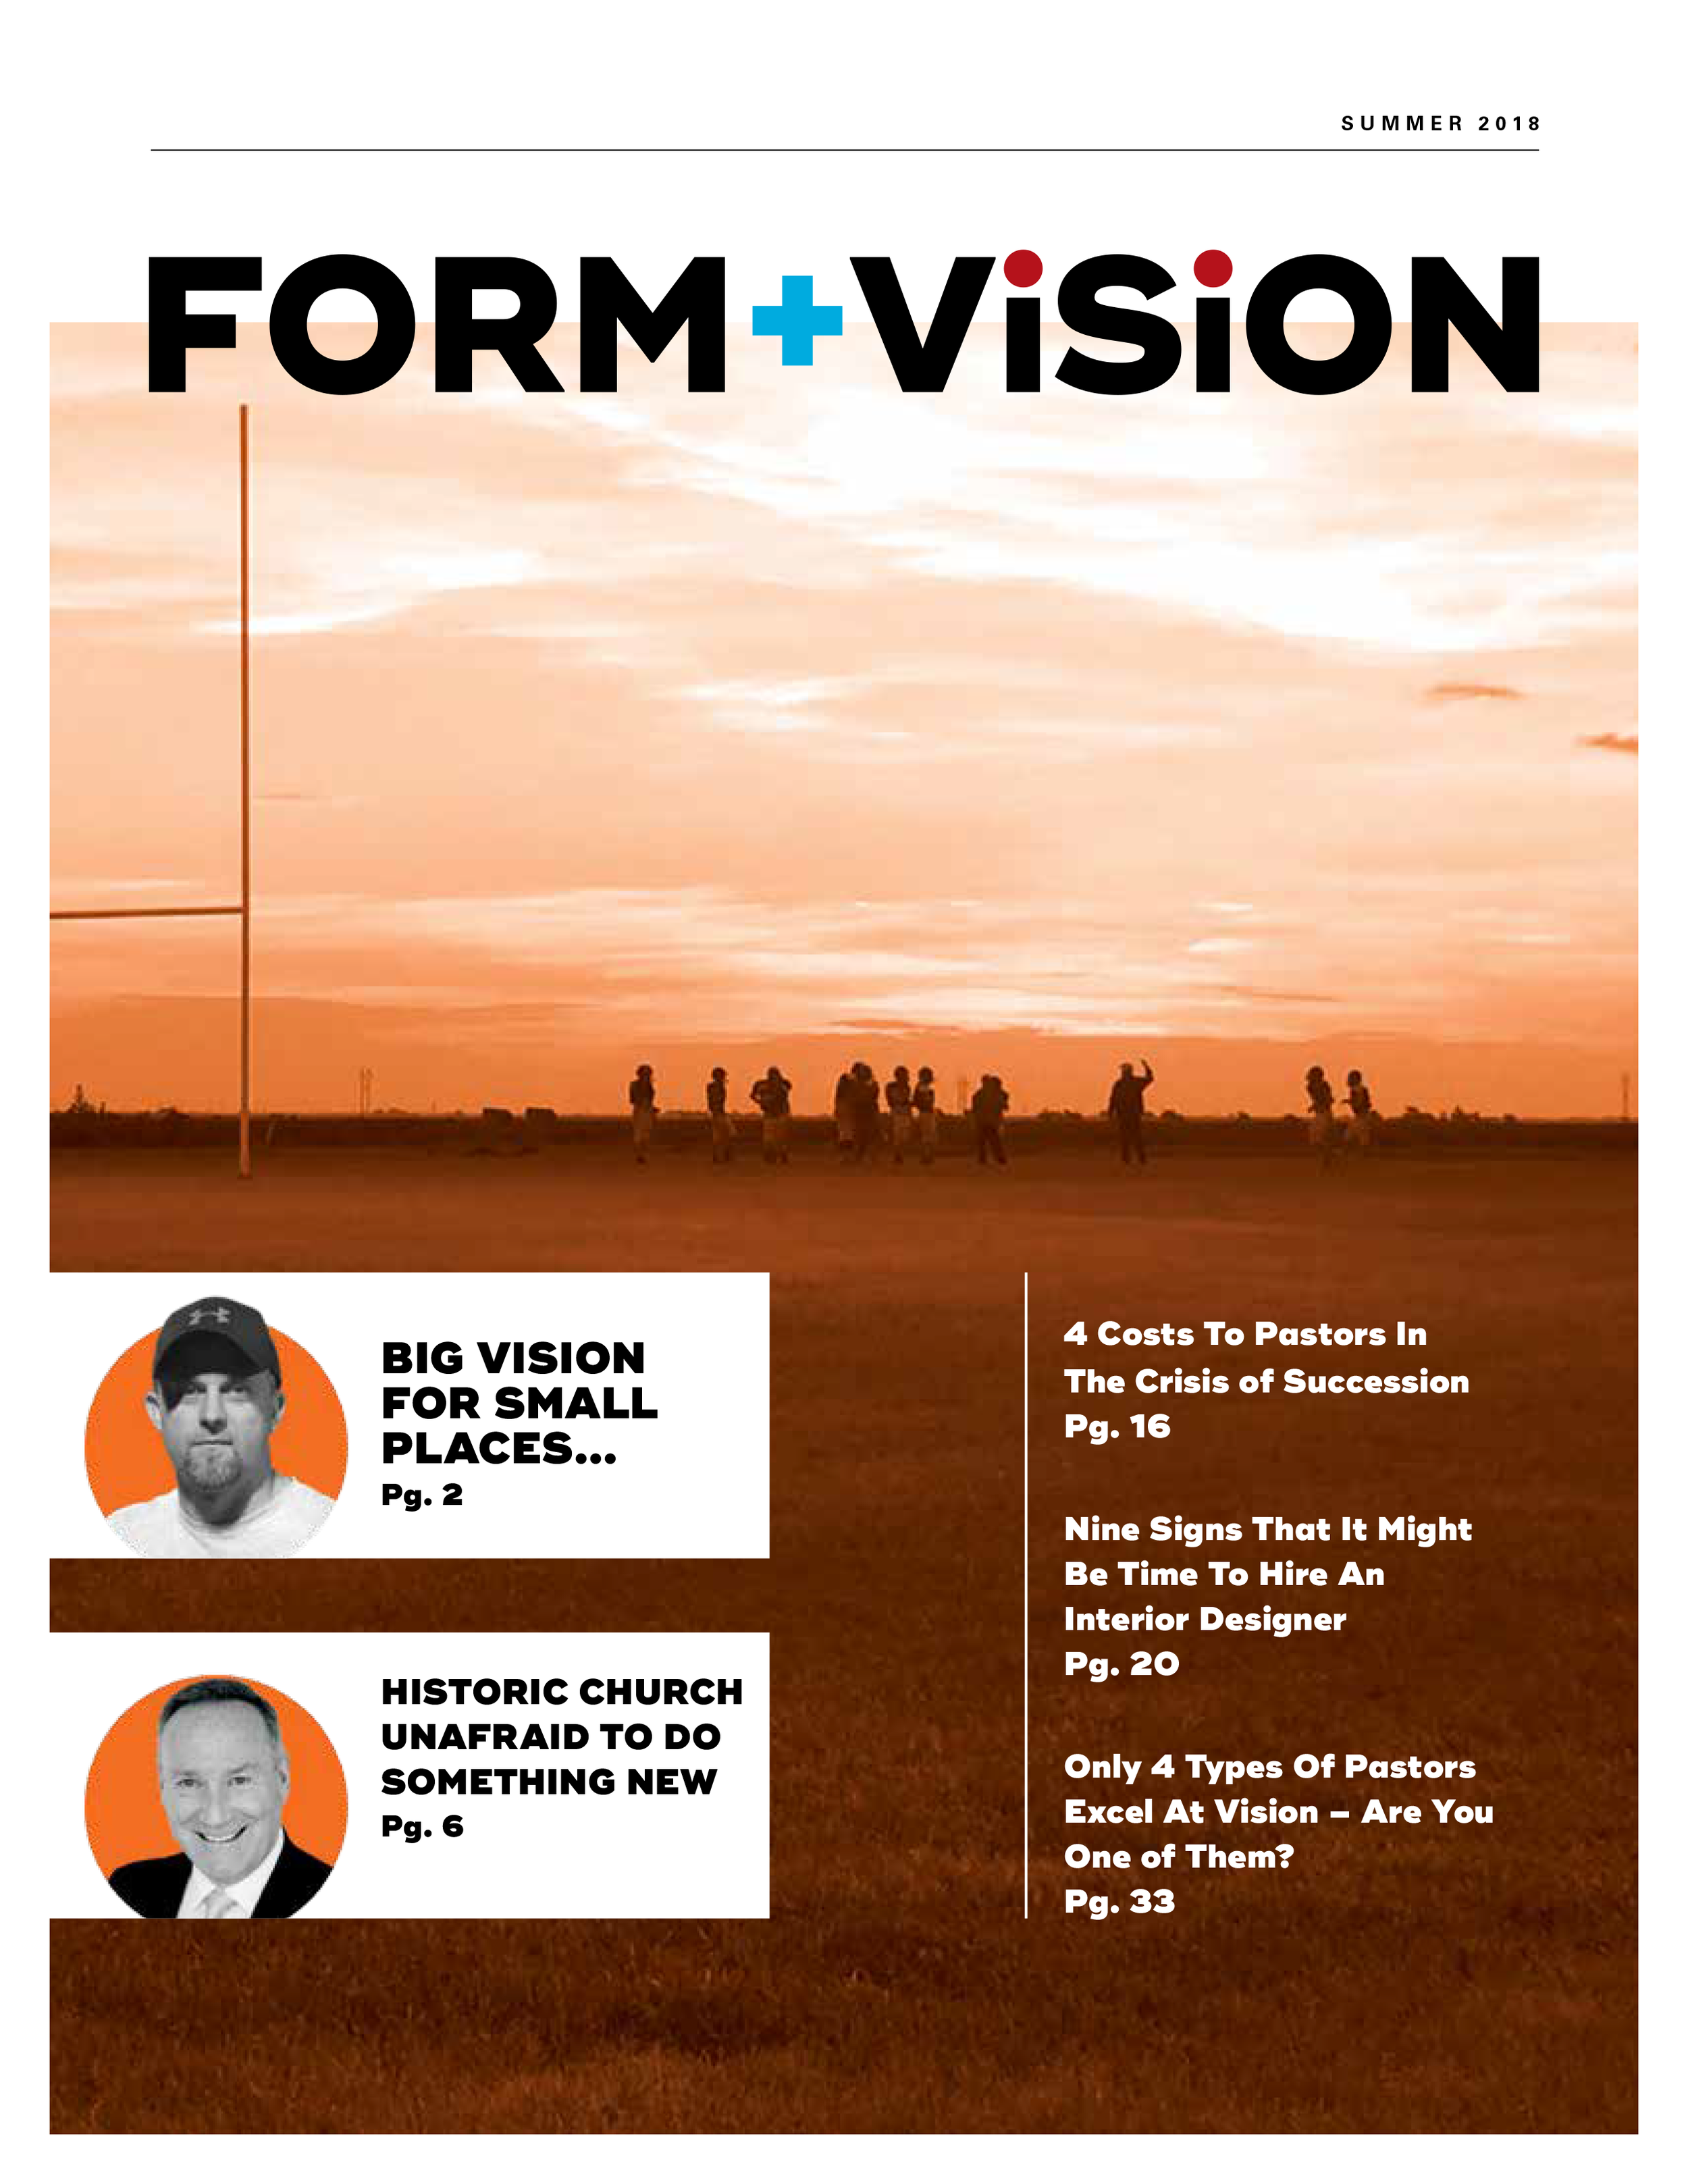 Form + Vision 2018